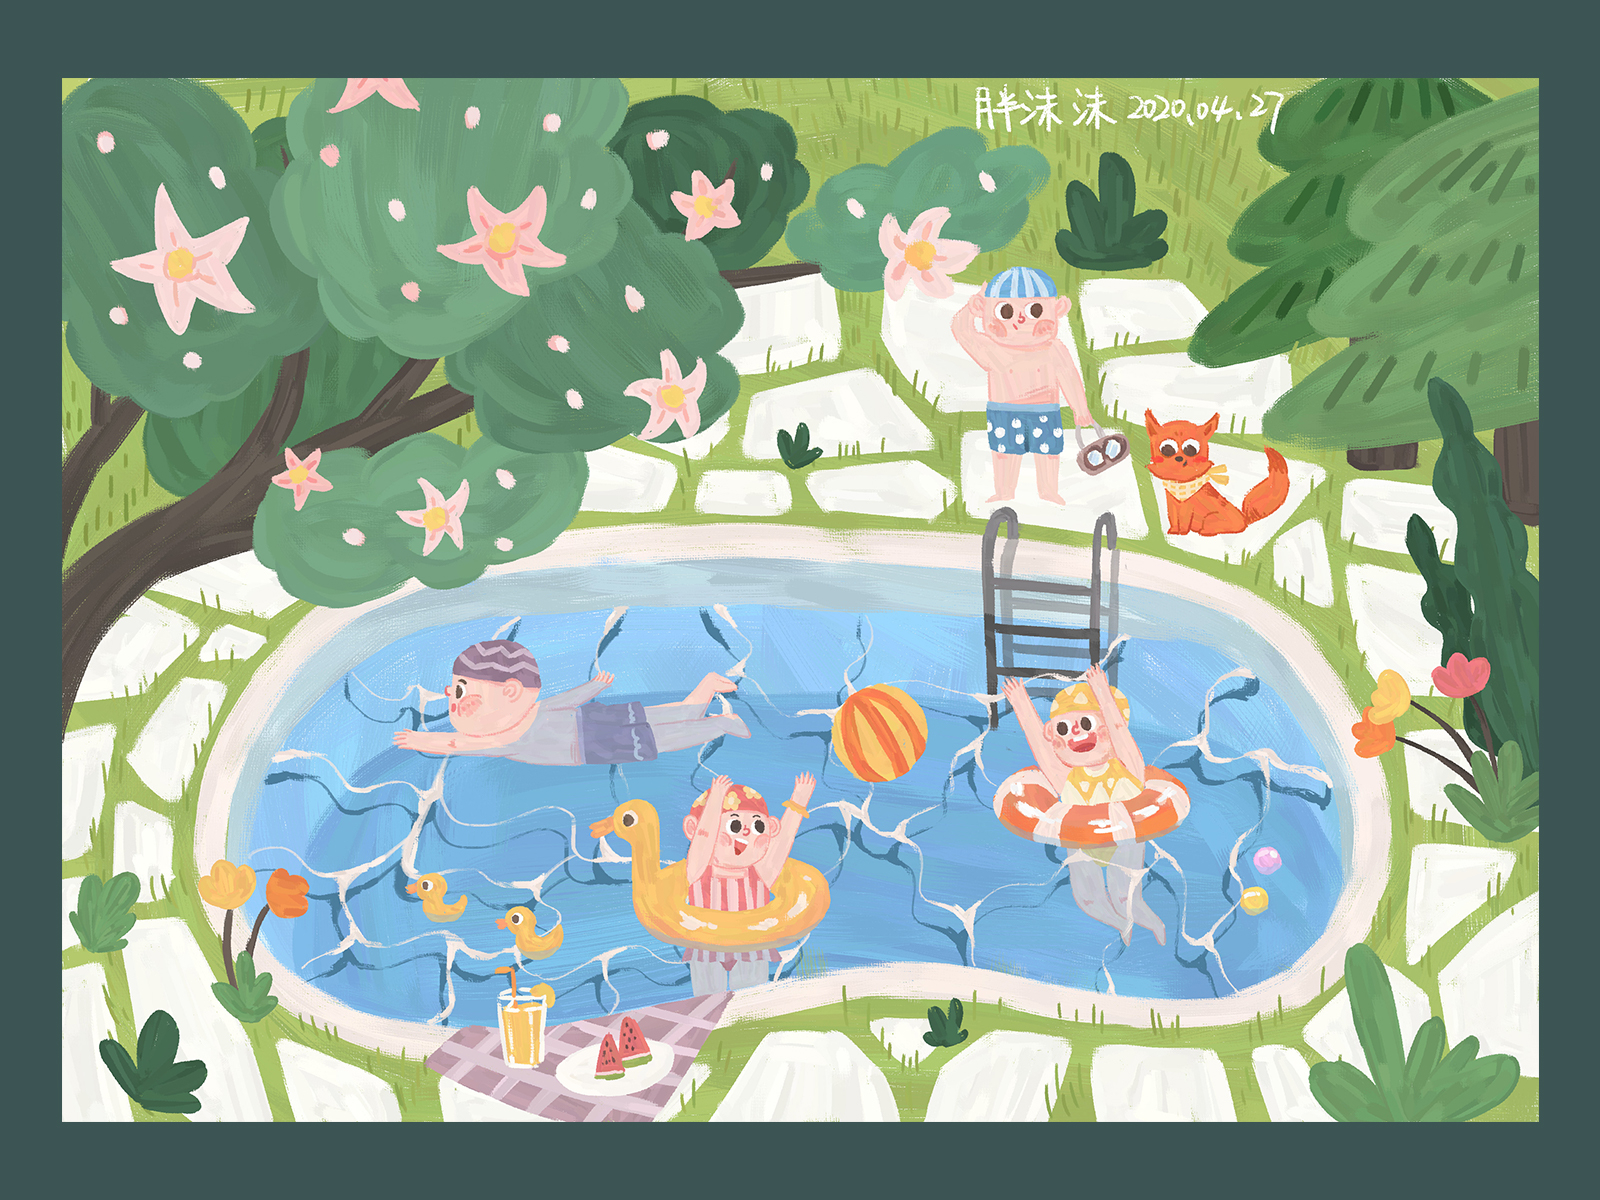 即将来临的清爽夏日 cartoon books color delight design illustration summer swim